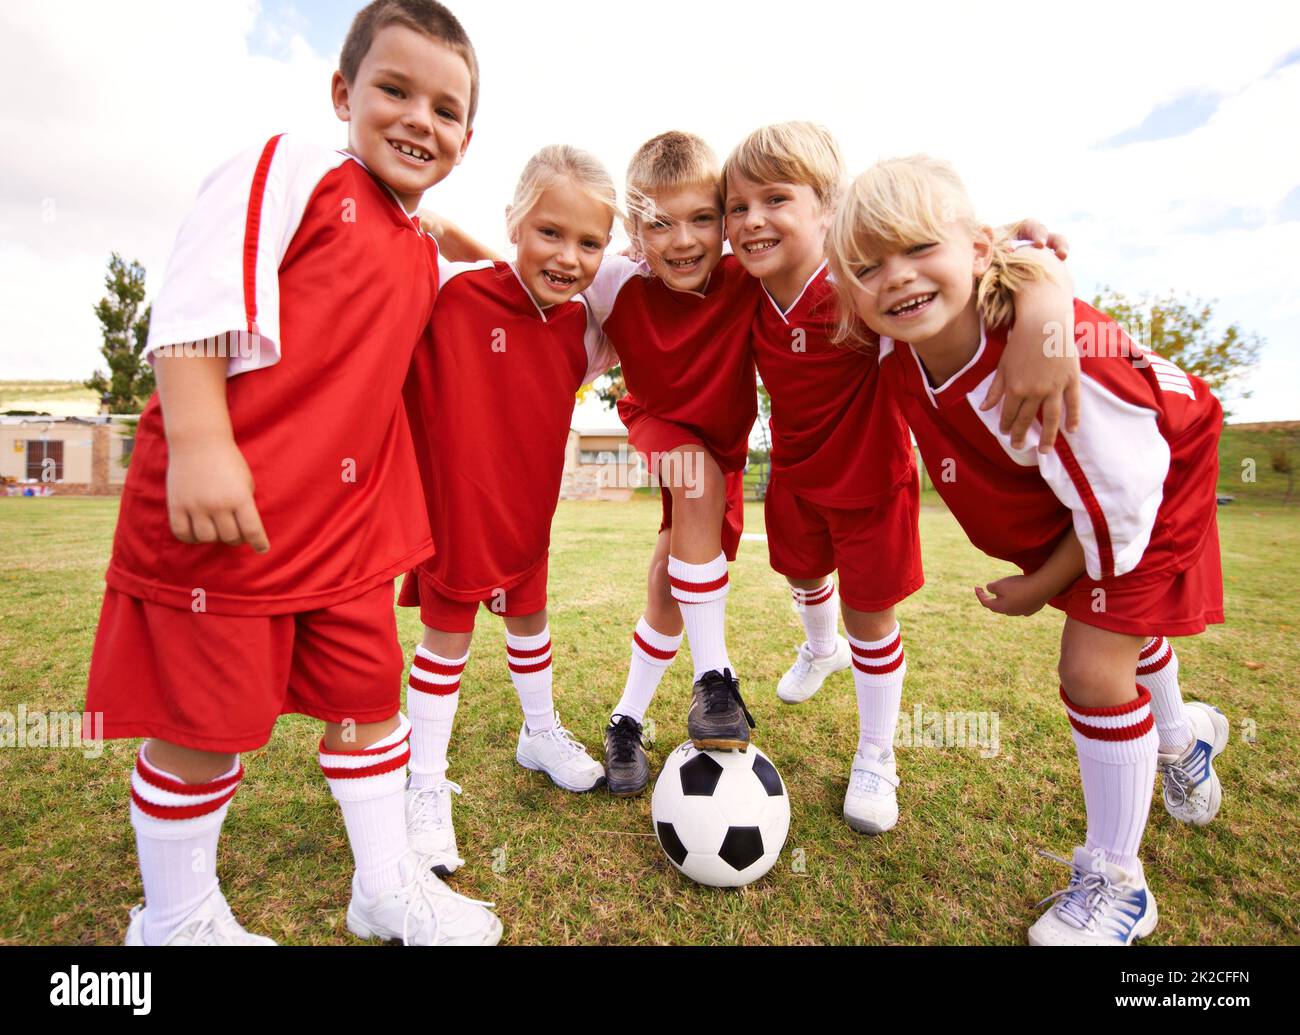 Partido De Fútbol Entrenamiento De Fútbol Para Niños Fotos, retratos,  imágenes y fotografía de archivo libres de derecho. Image 51866238